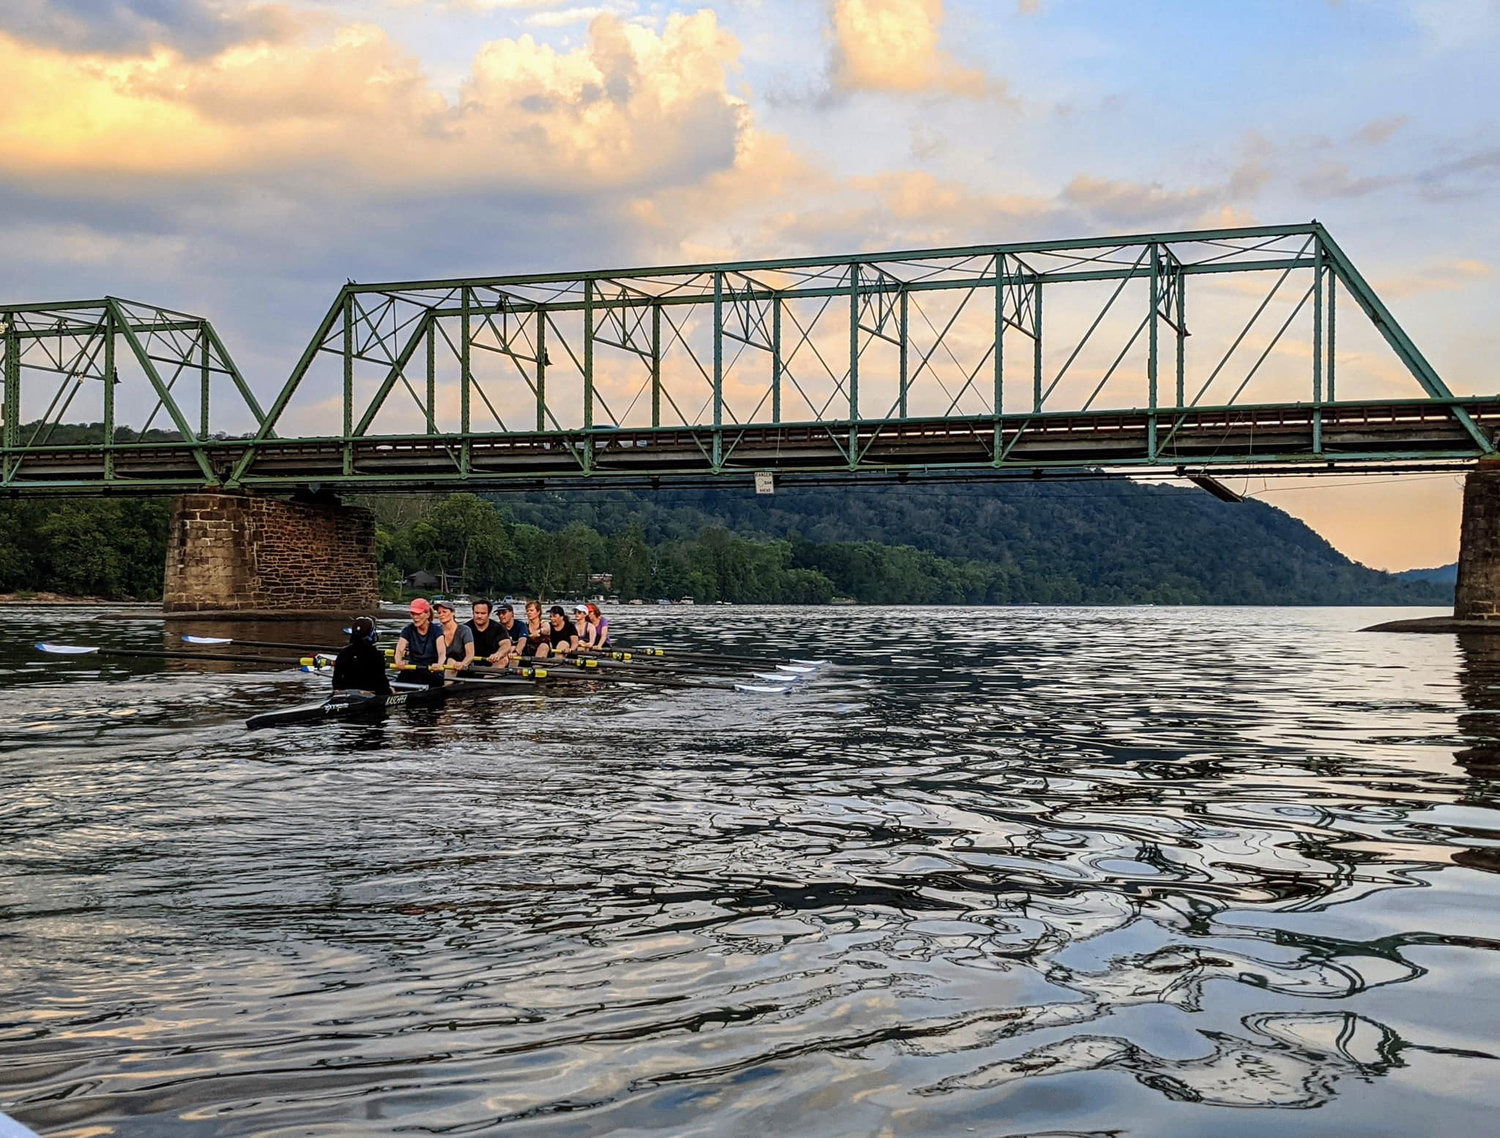 Members of the Swan Creek Rowing Club in Lambertville, N.J., row on the Delaware River.